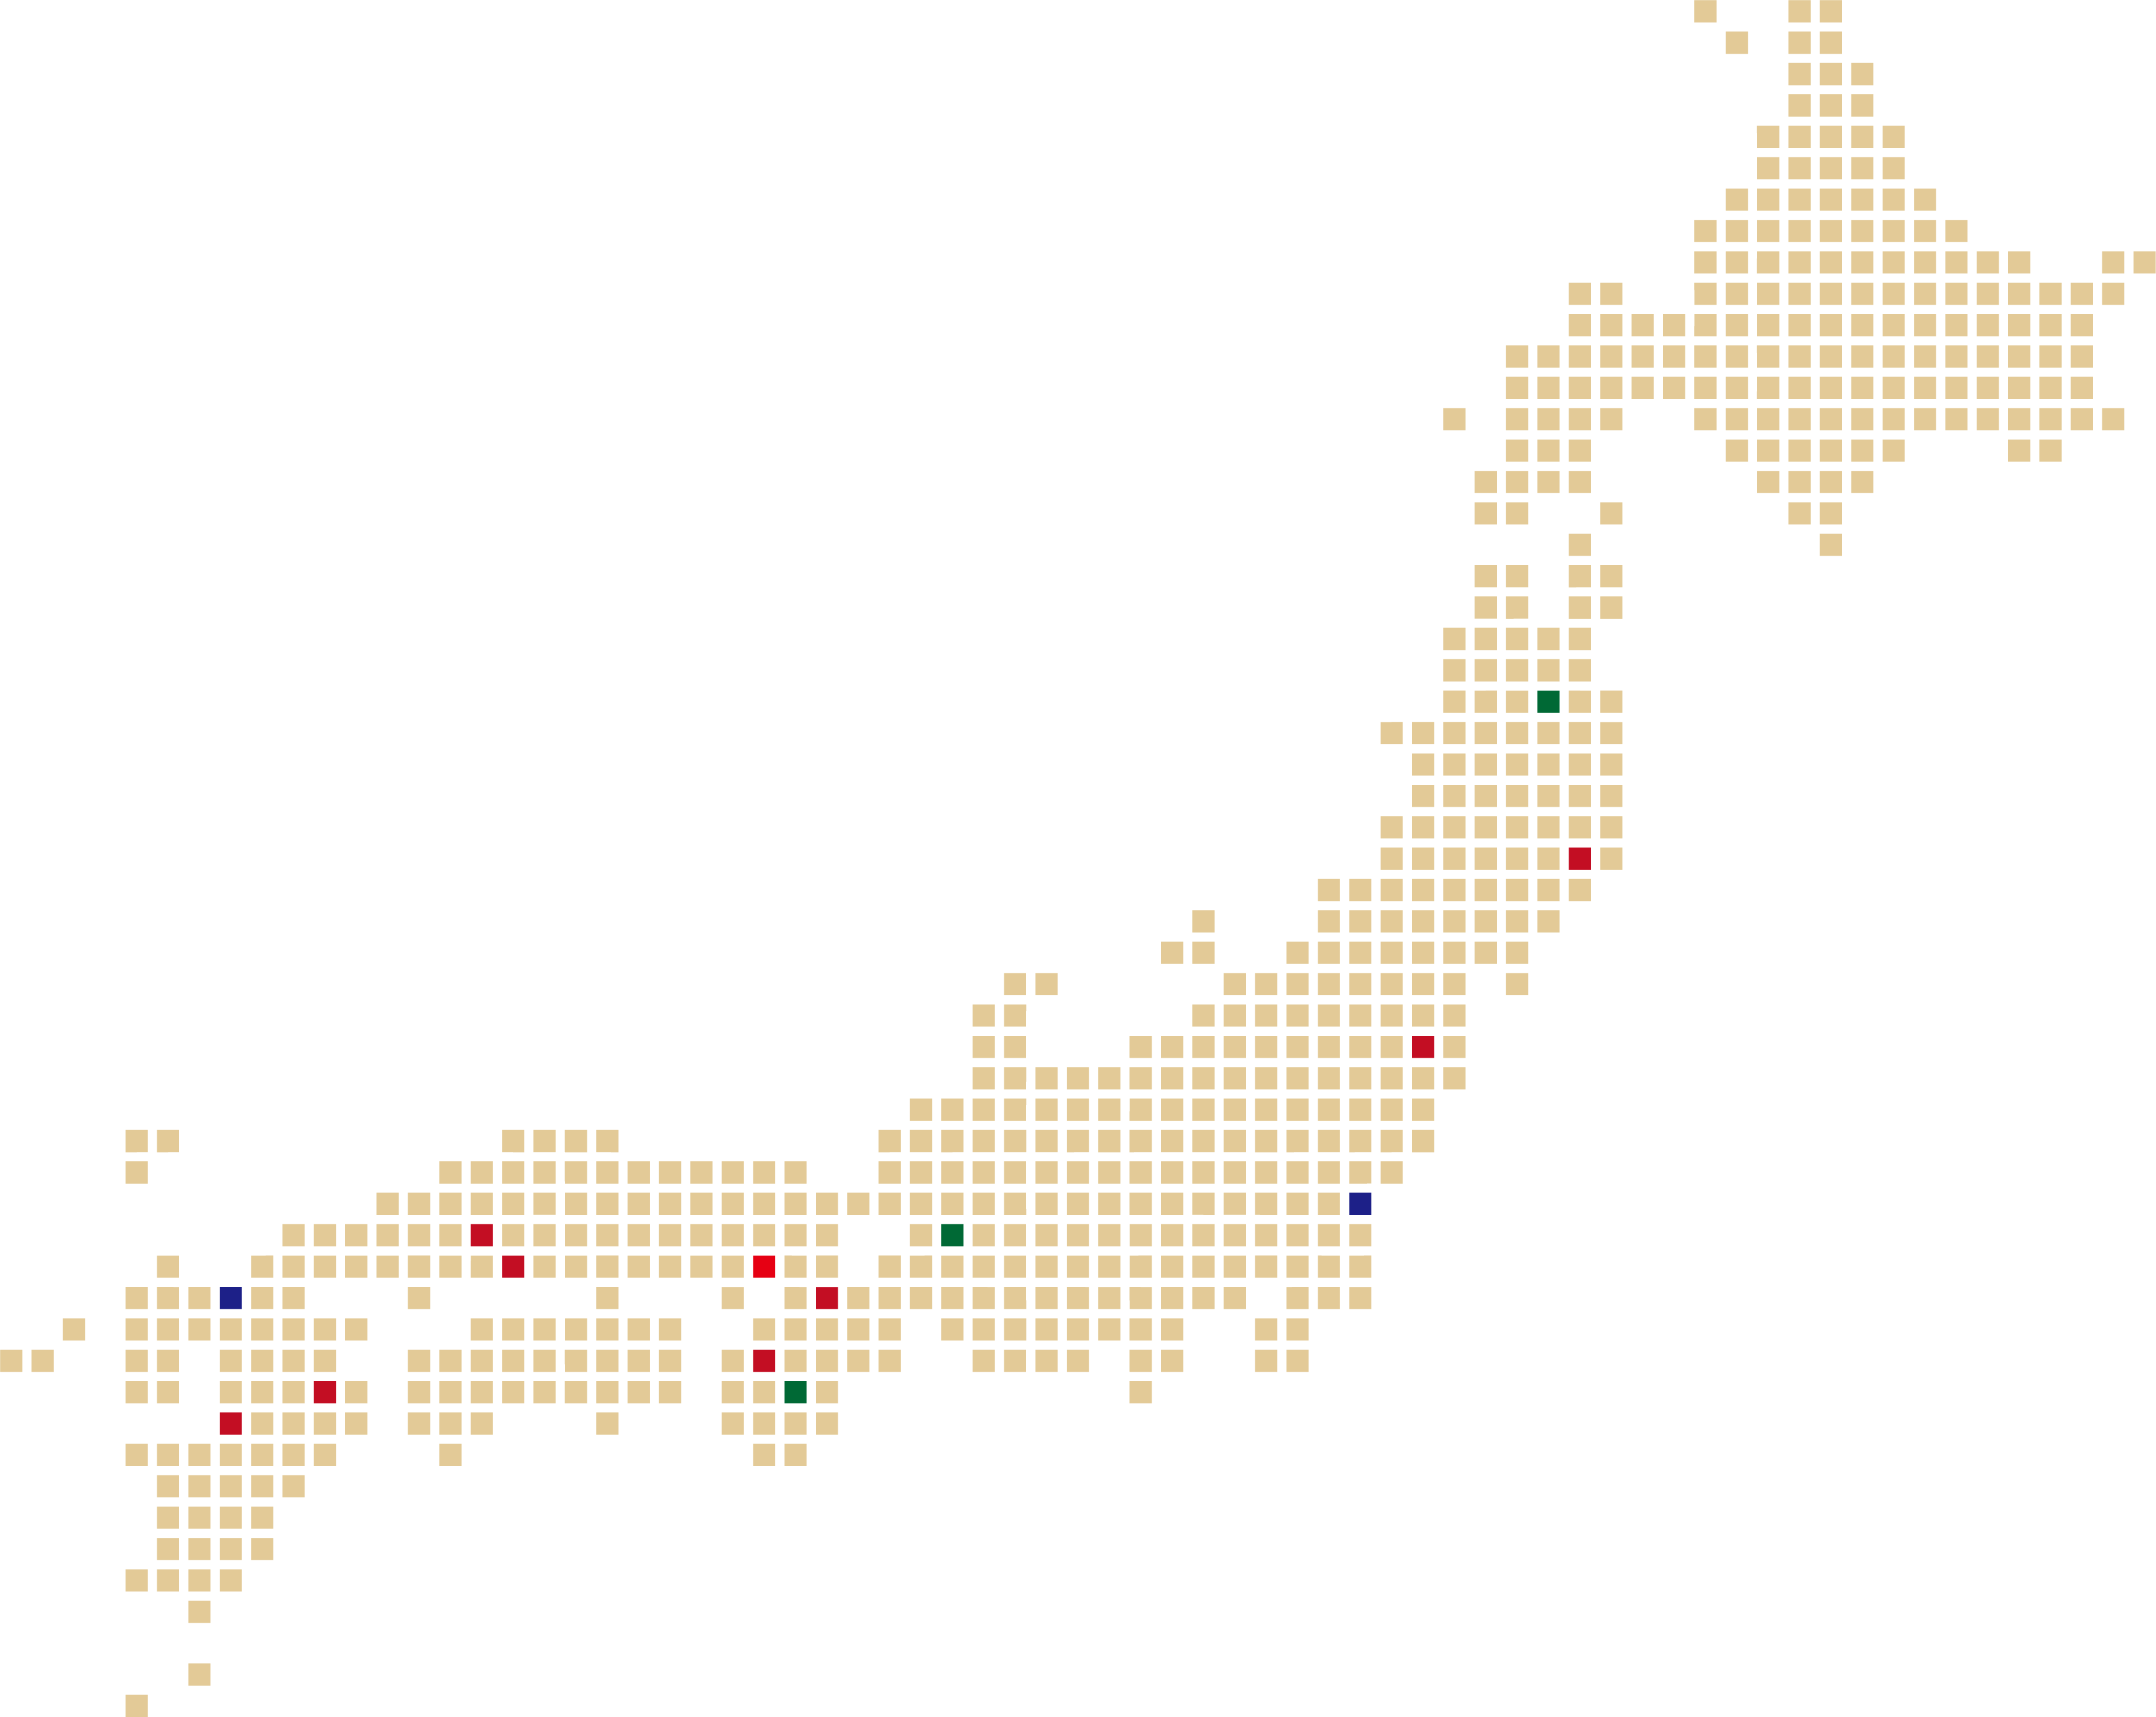 環境修復に取り組んだ地域を記載した日本地図